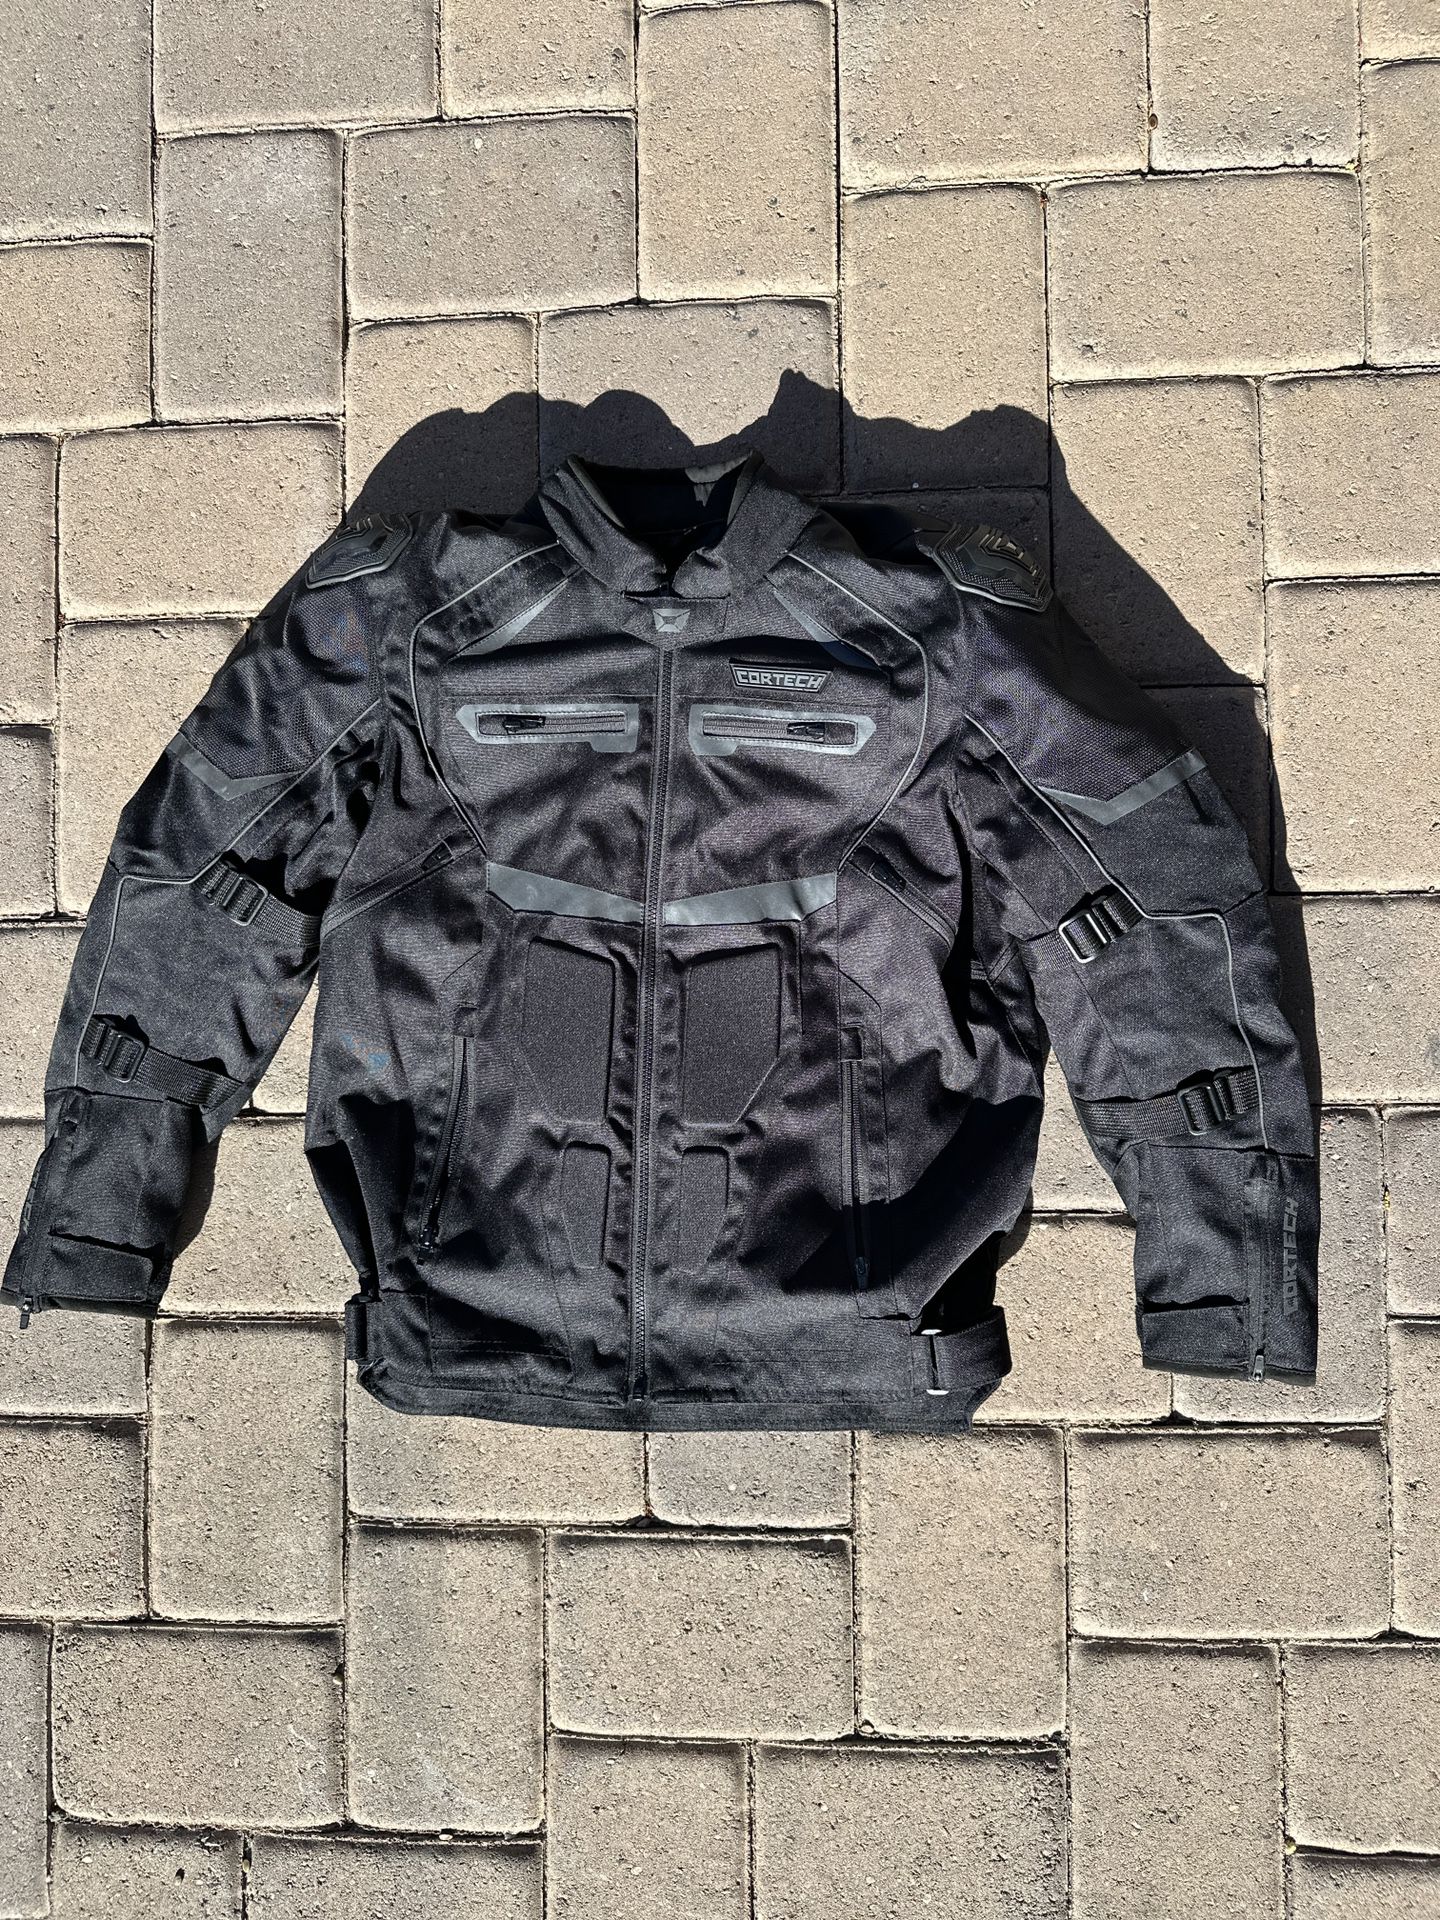 Cortech Men’s Motorcycle Jacket